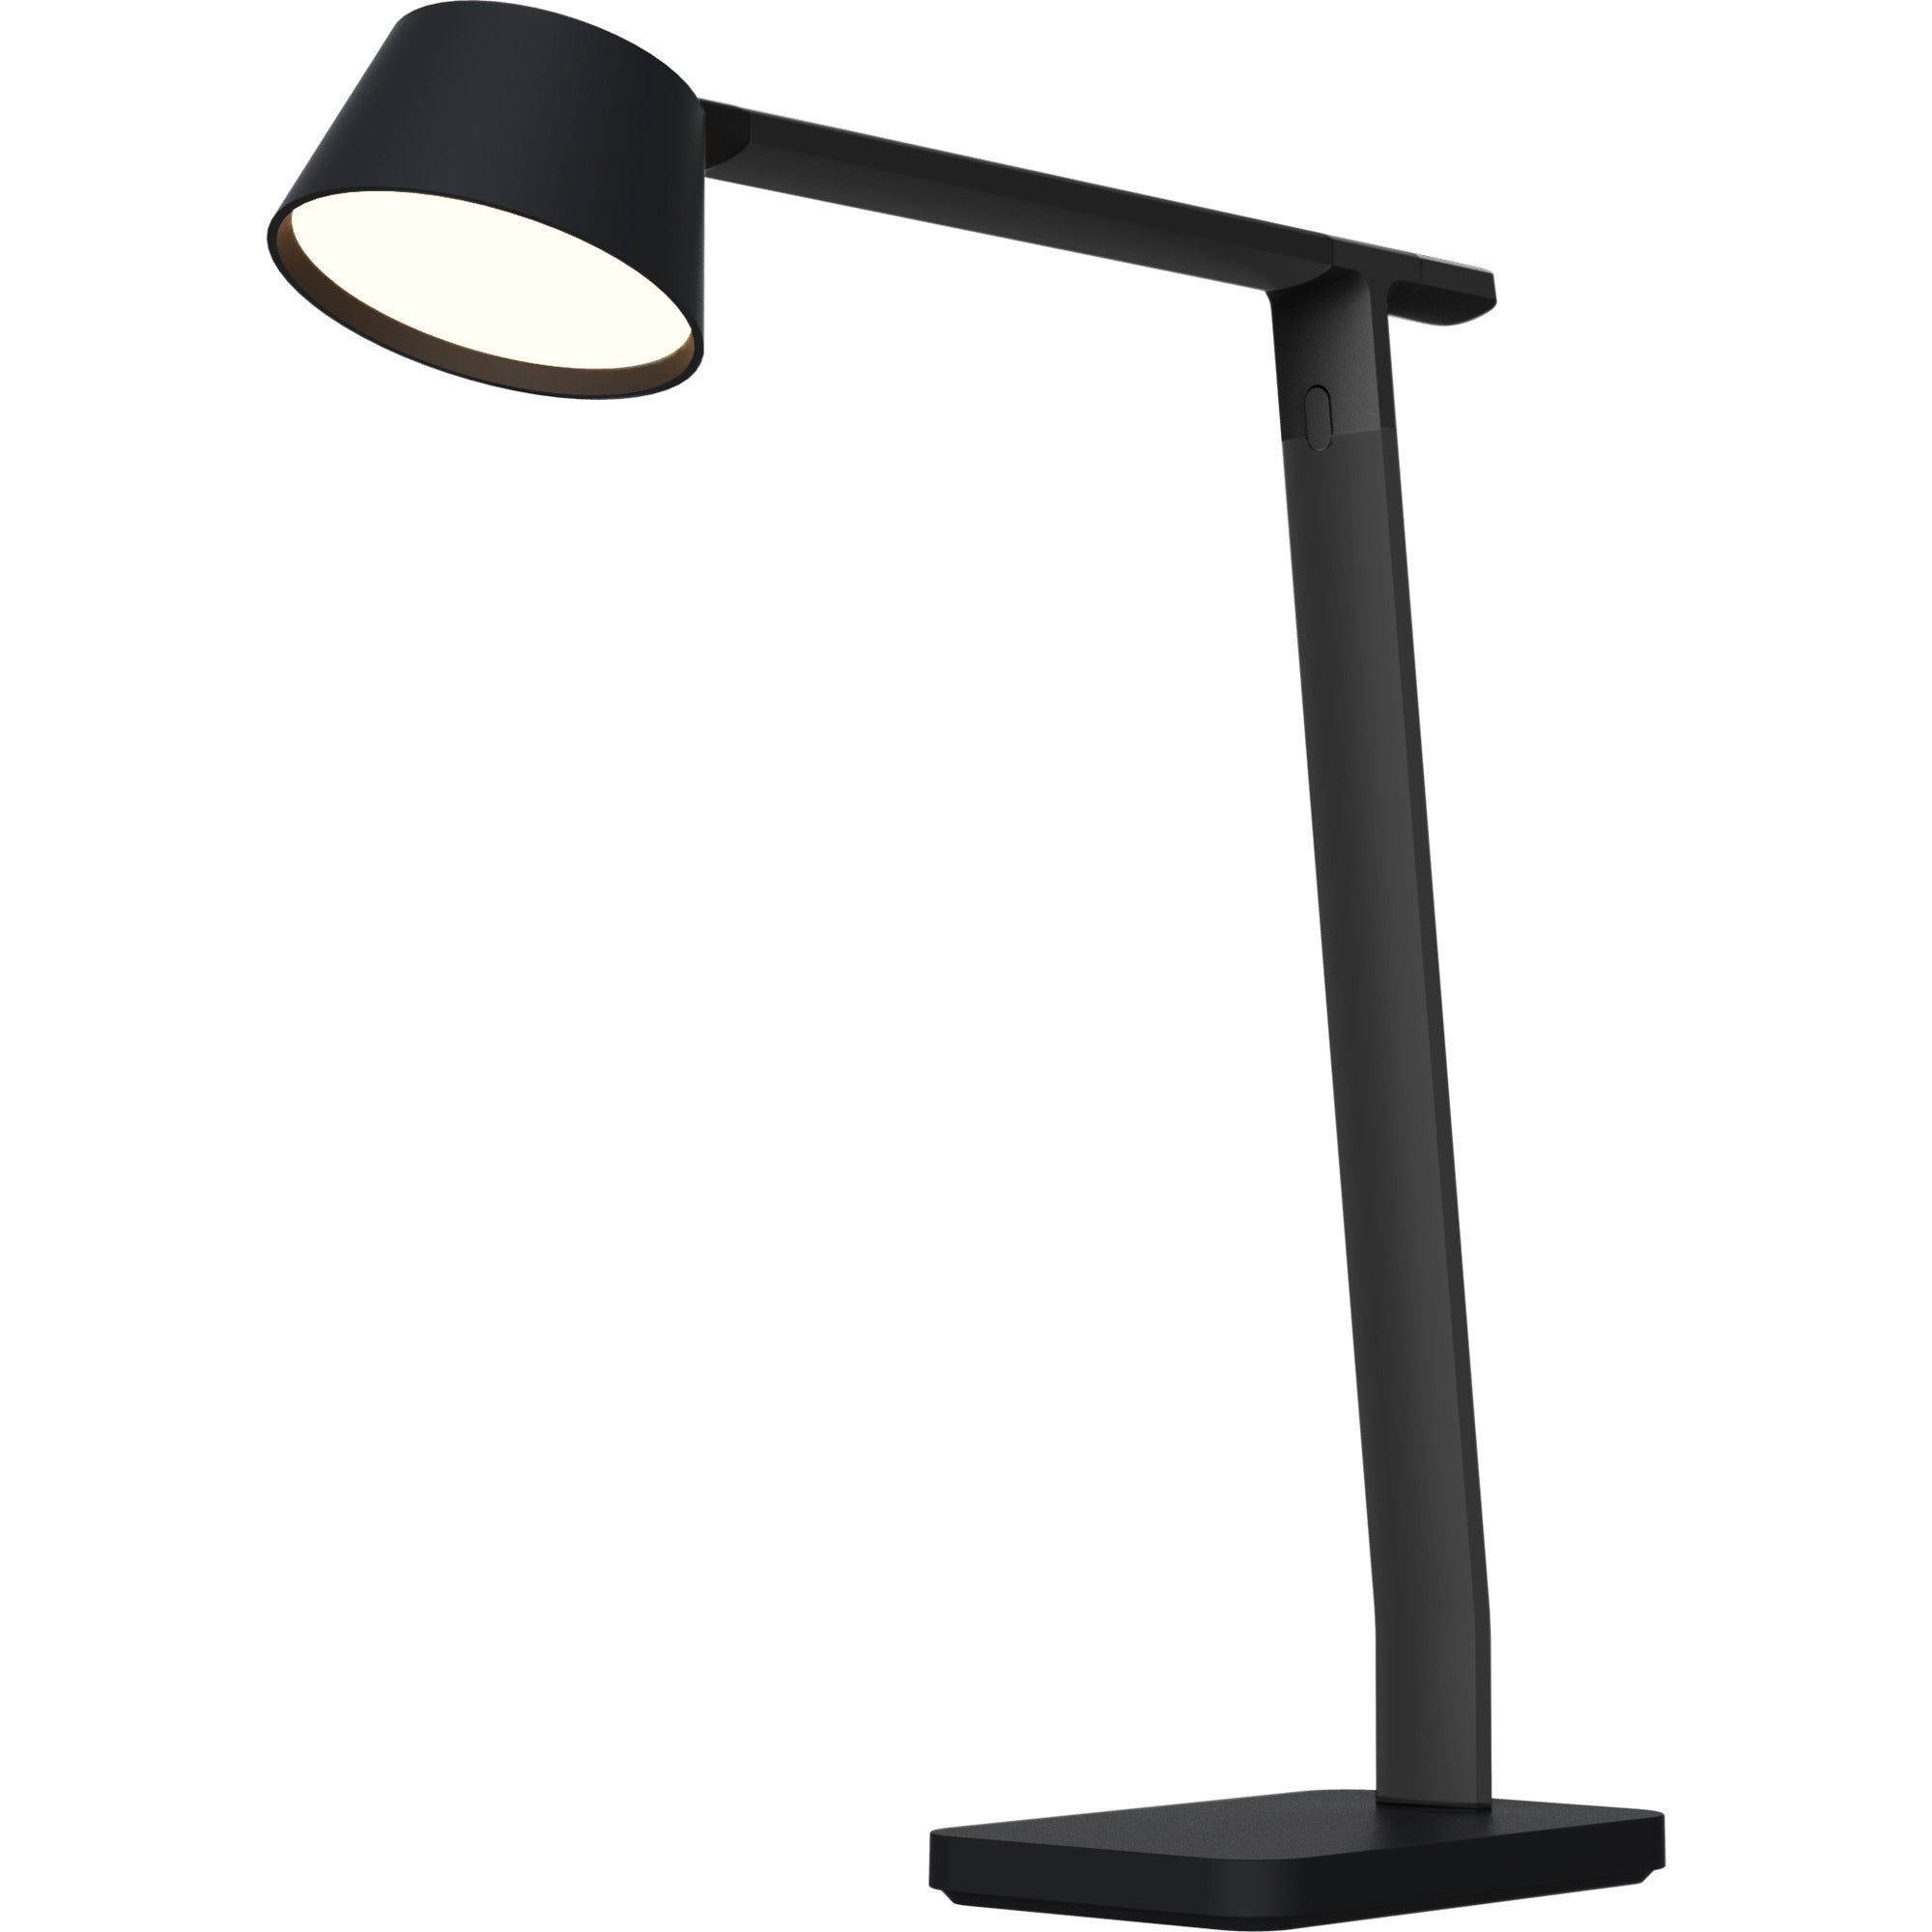 bostitch-verve-adjustable-led-desk-lamp-led-bulb-adjustable-dimmable-adjustable-brightness-clock-durable-usb-charging-swivel-base-color-changing-mode-aluminum-desk-mountable-black-for-desk-alexa-supported_bos2200usbsmbk - 1